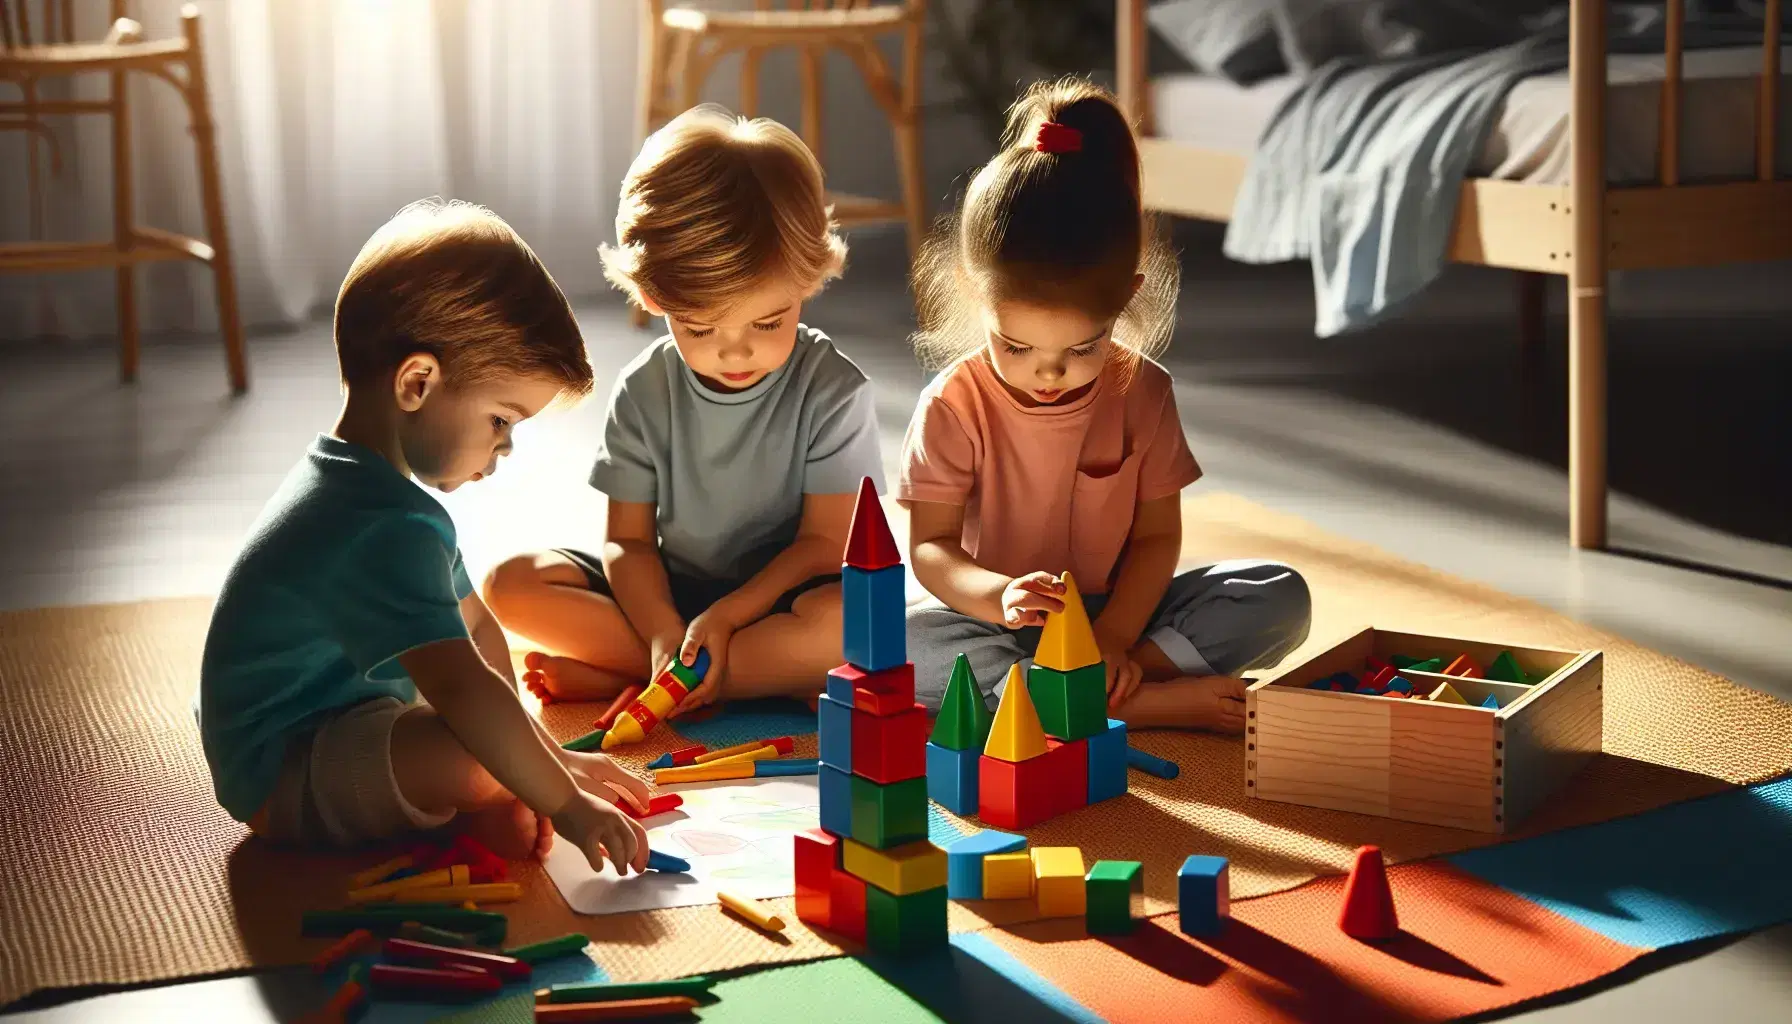 Cuatro niños en una alfombra colorida juegan con bloques, formas geométricas, crayones y un rompecabezas en una habitación iluminada naturalmente.